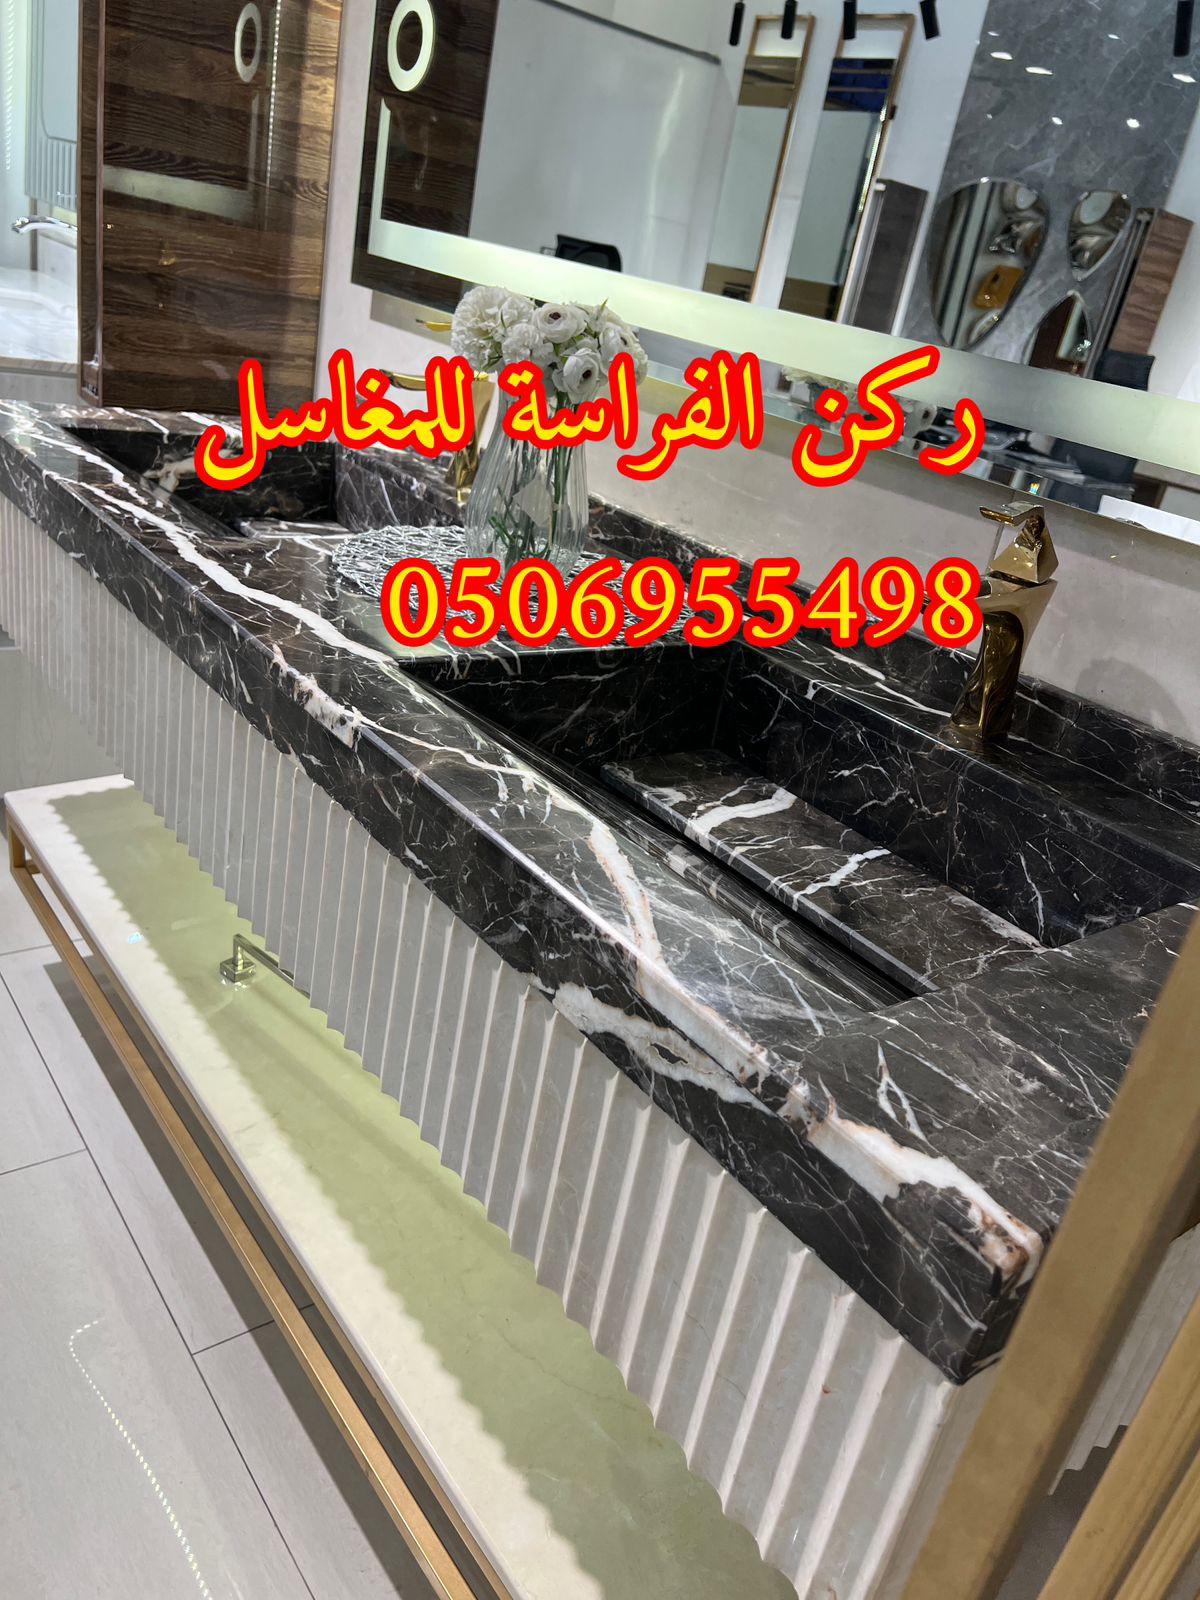 تفصيل احواض مغاسل رخام في الرياض,0506955498 867719158